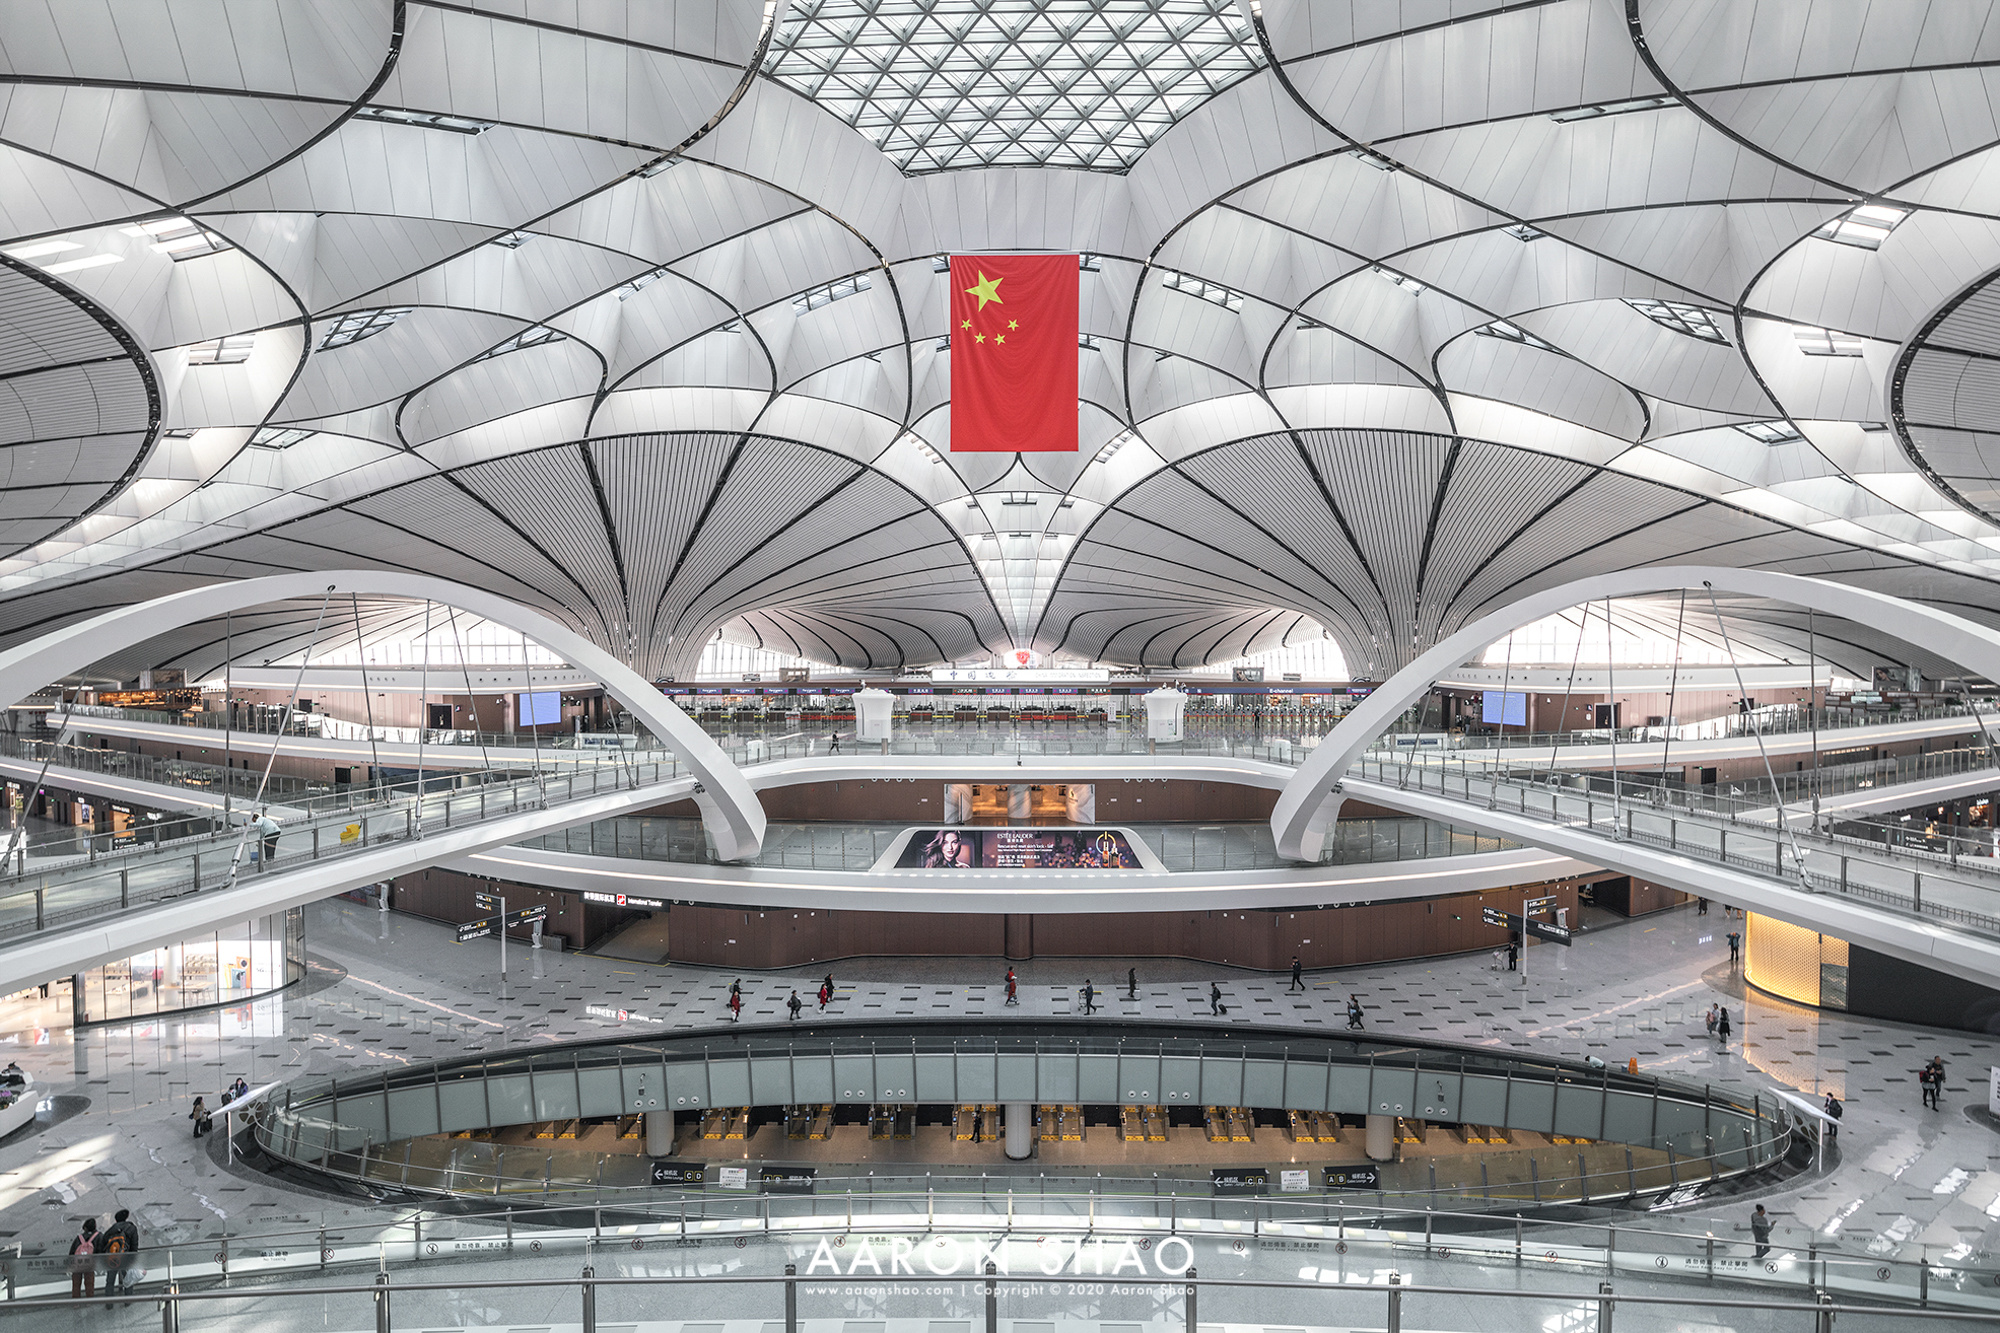 北京大兴机场3大看点 中国航空市场估5年内超越美国-航拍网